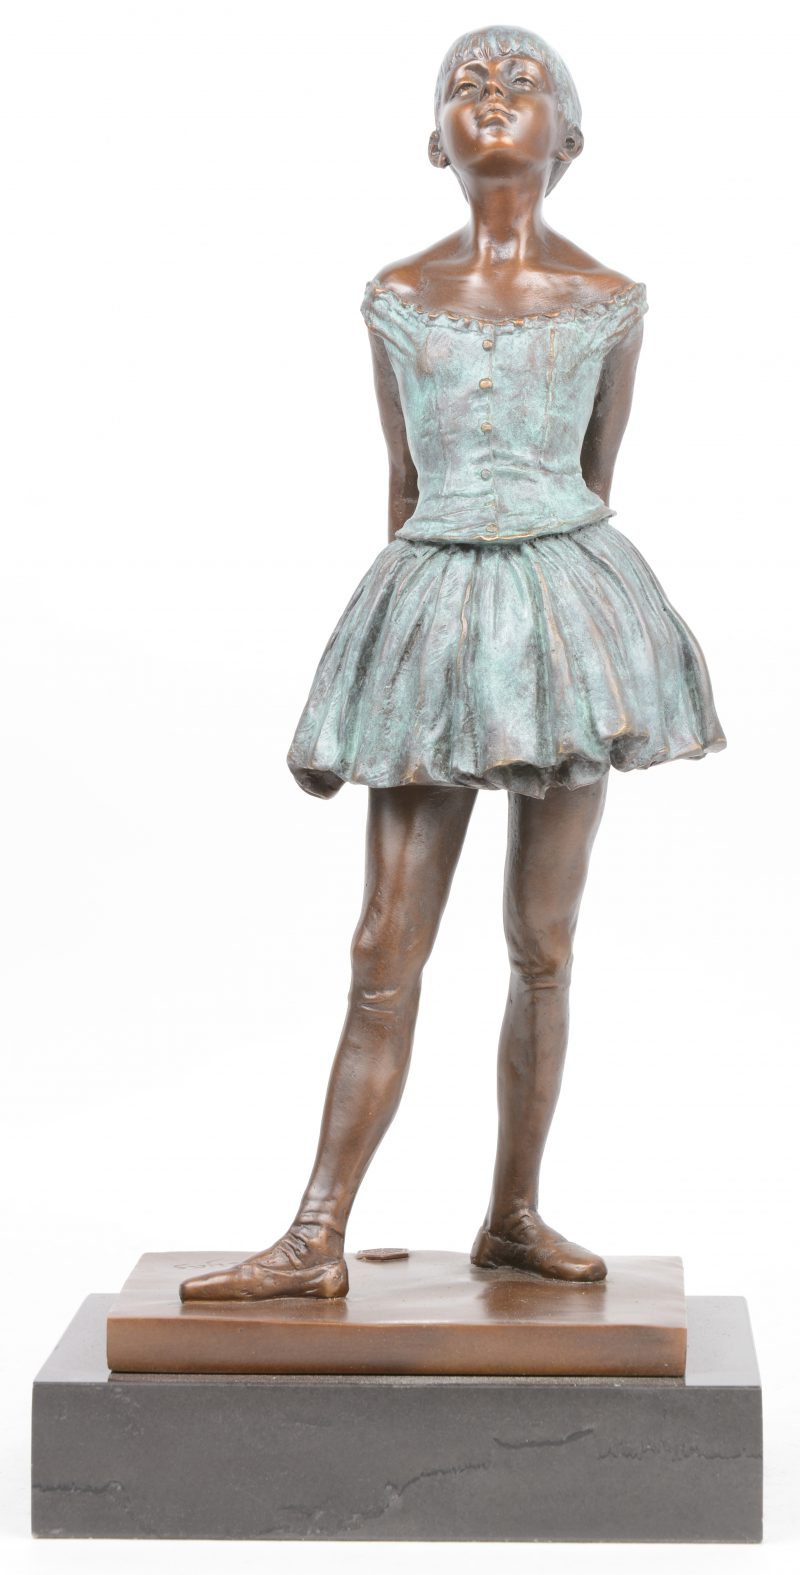 “Jonge ballerina”. Een bronzen beeld met tweekleurig patina naar een werk van Edgar degas. Op arduinen sokkel.